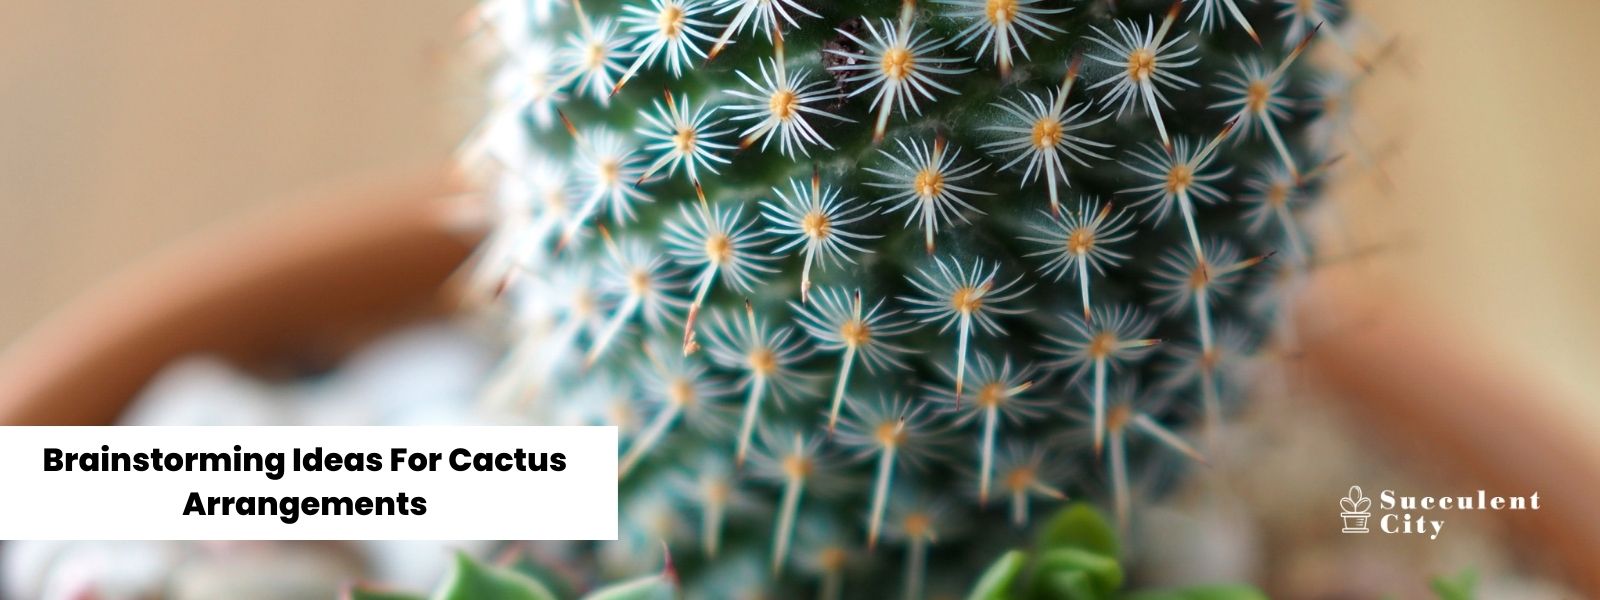 Piense en ideas para arreglos de cactus